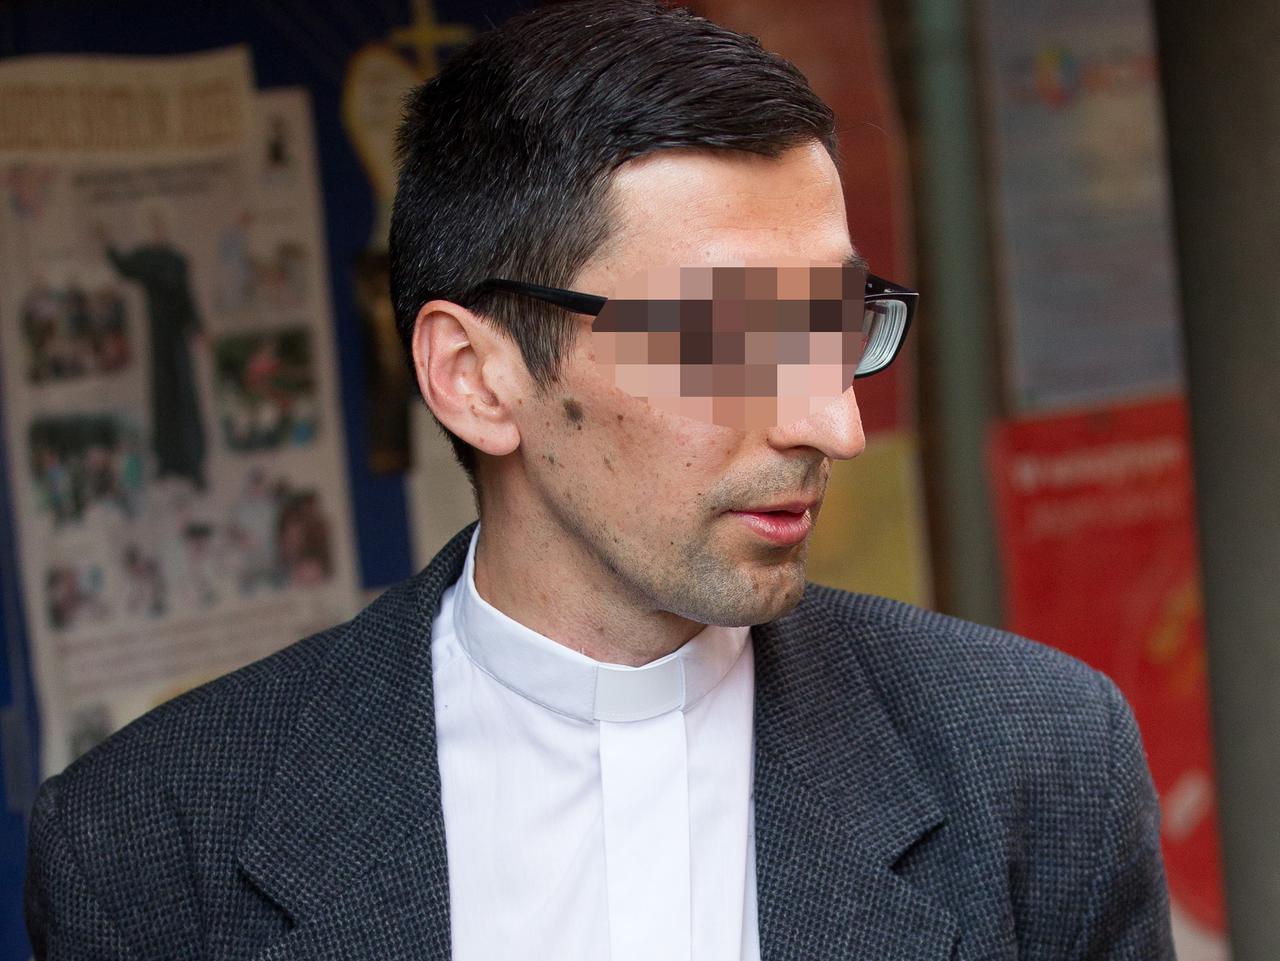 Uczennice oskarżyły księdza o molestowanie